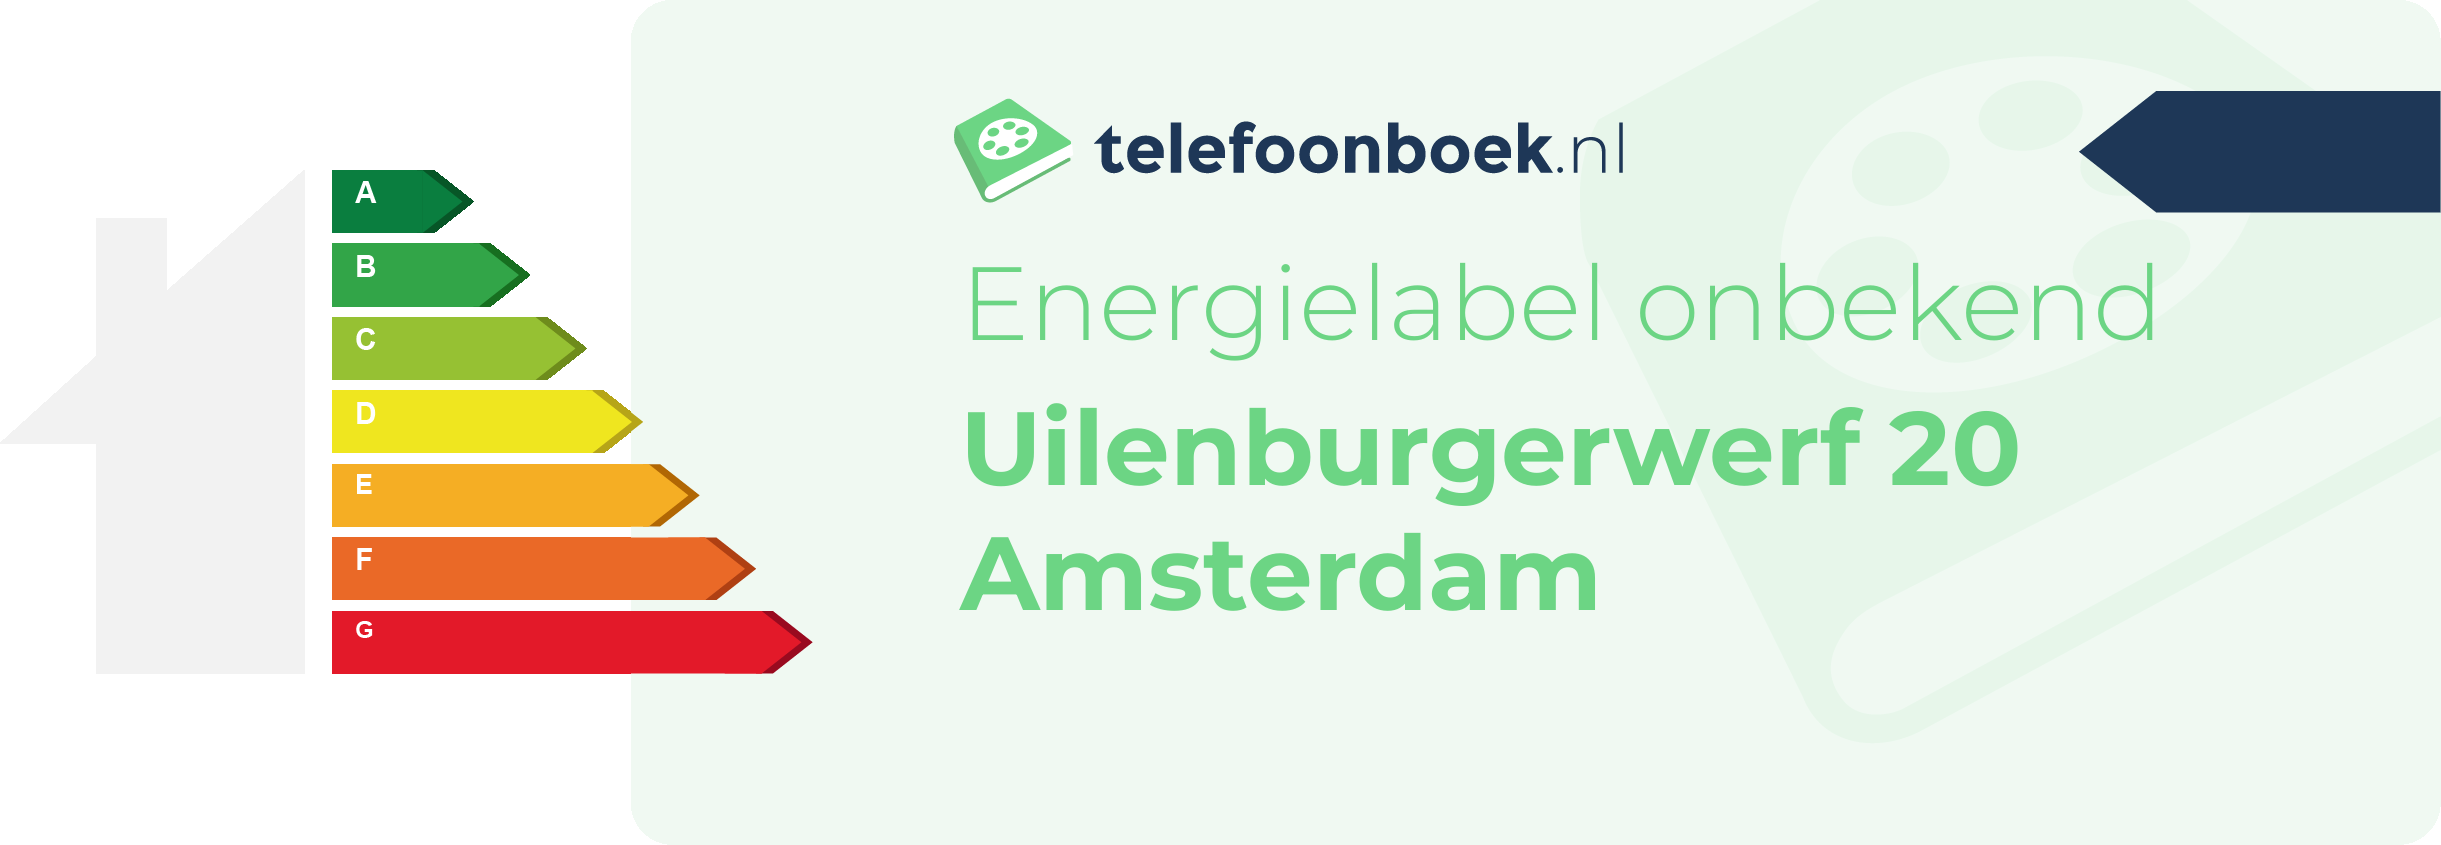 Energielabel Uilenburgerwerf 20 Amsterdam